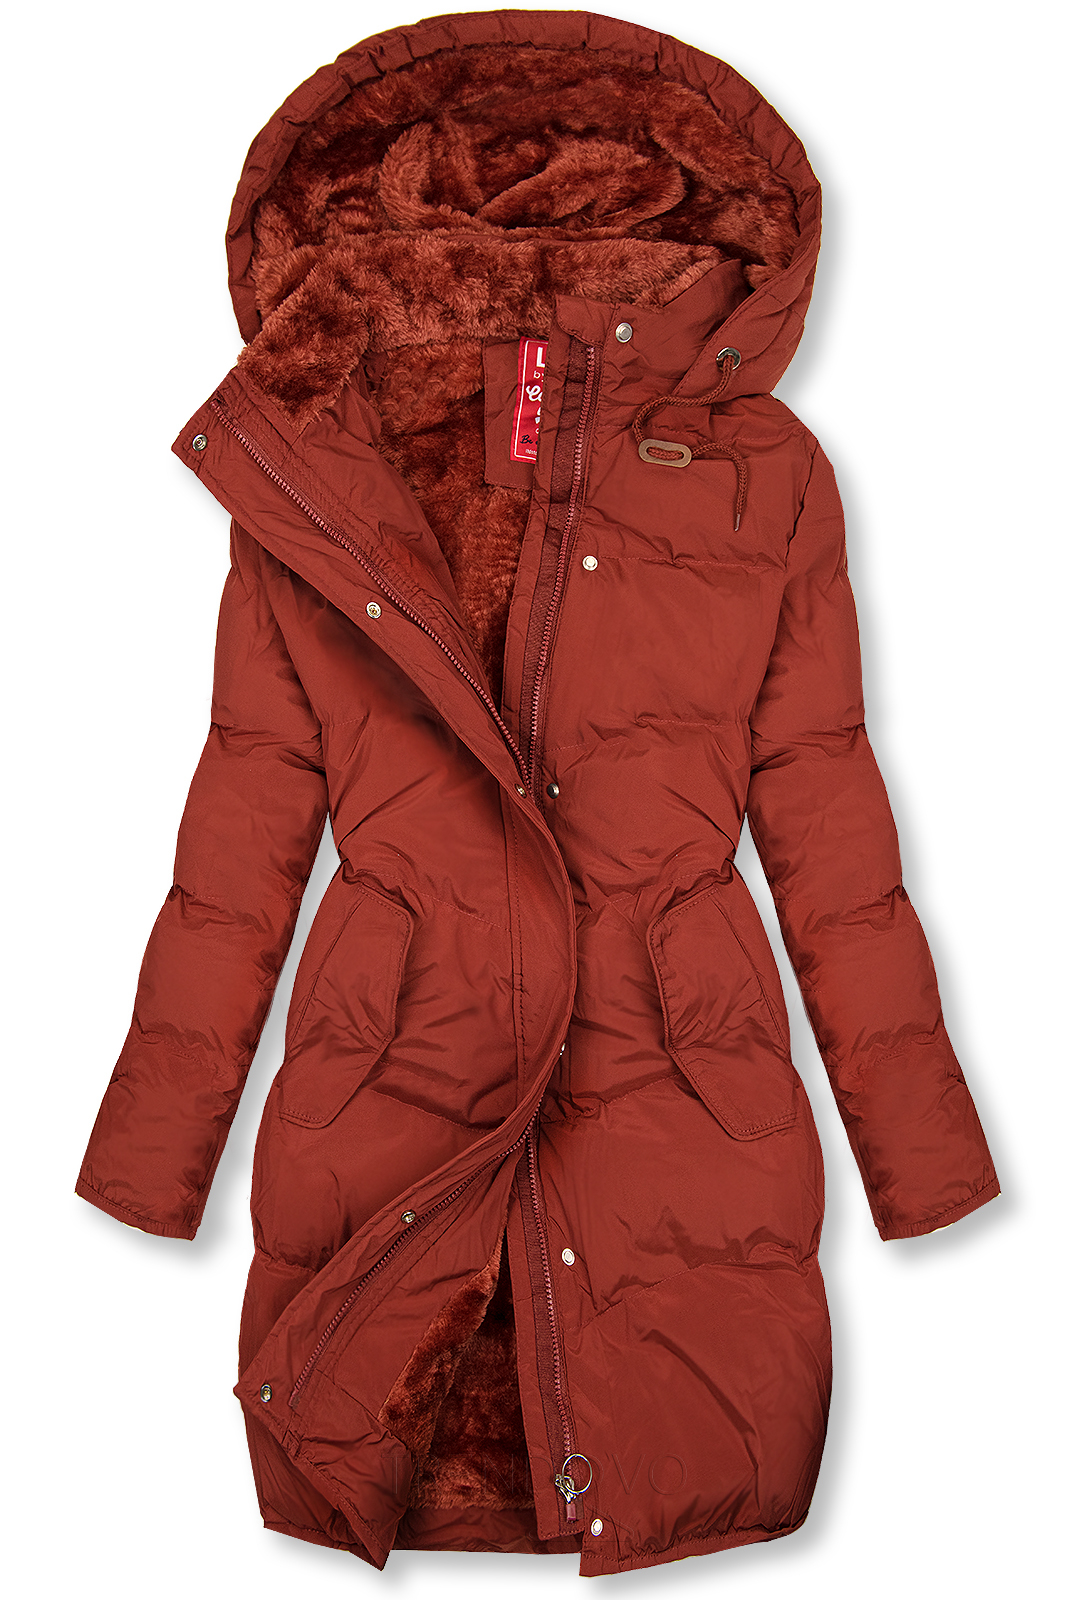 Hnědočervená zimní bunda s plyšovou podšívkou